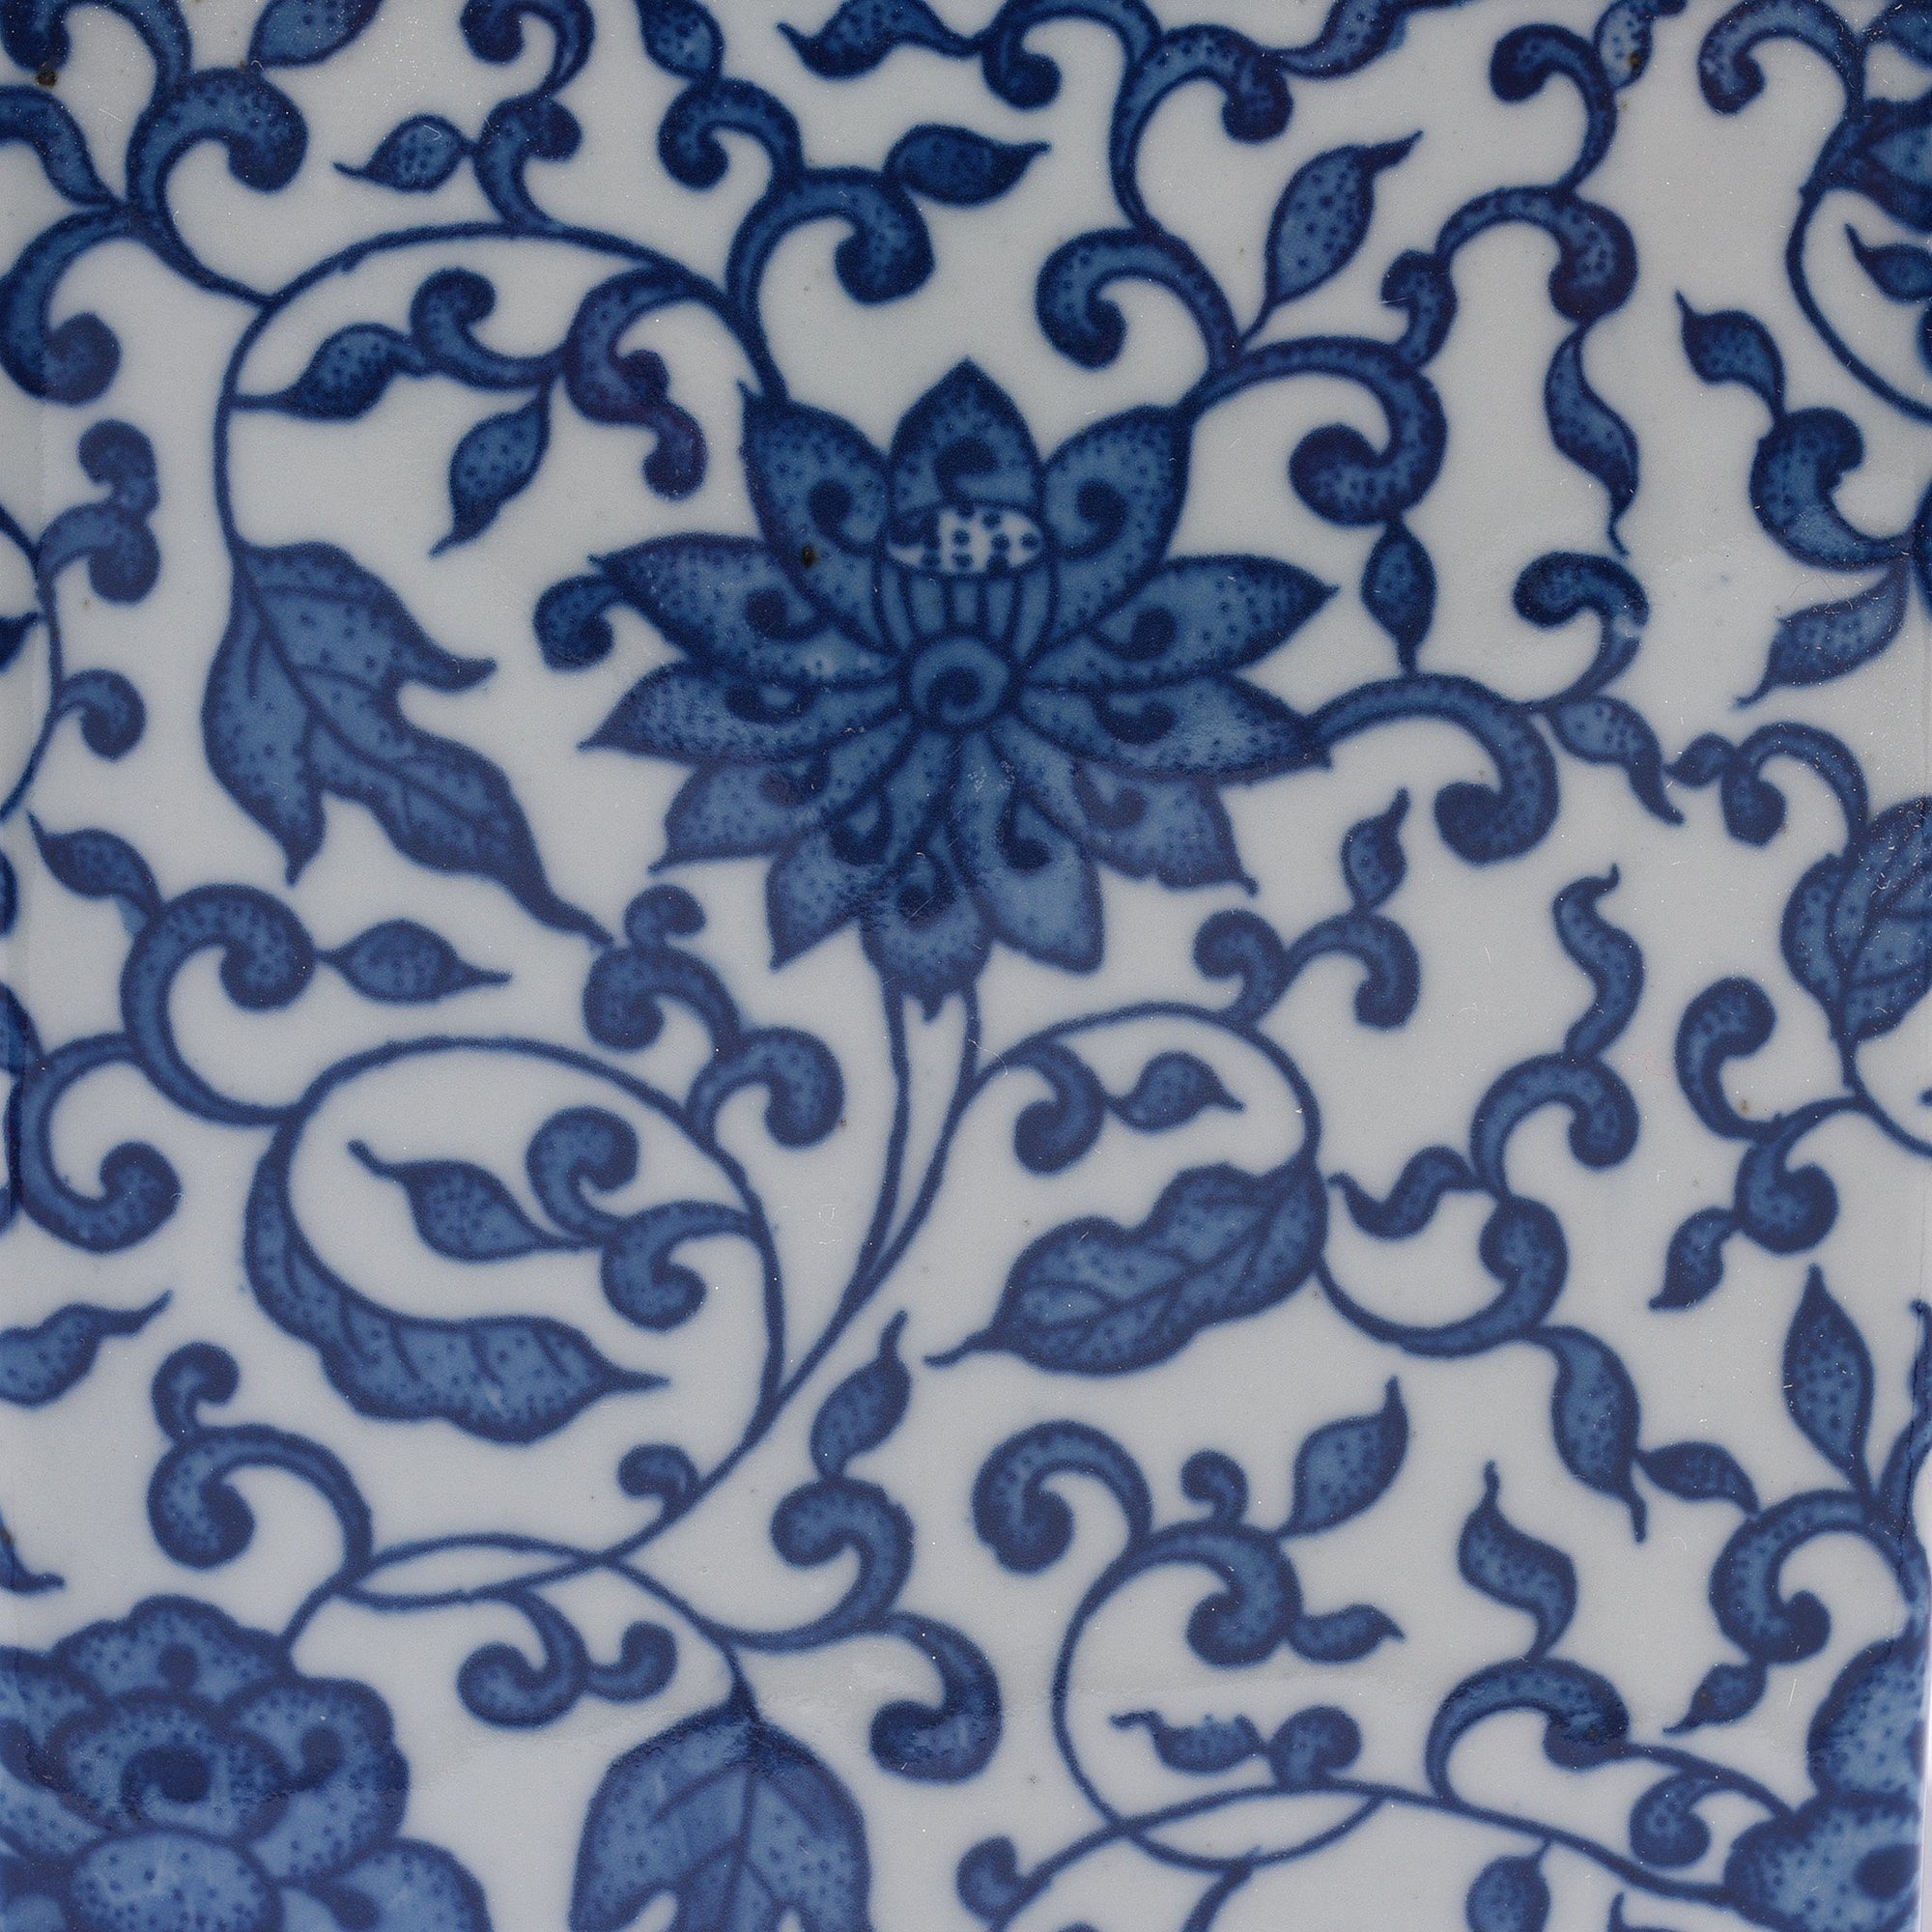 Blue And White Porcelain Tea Caddy - Peony Design | Indigo Antiques